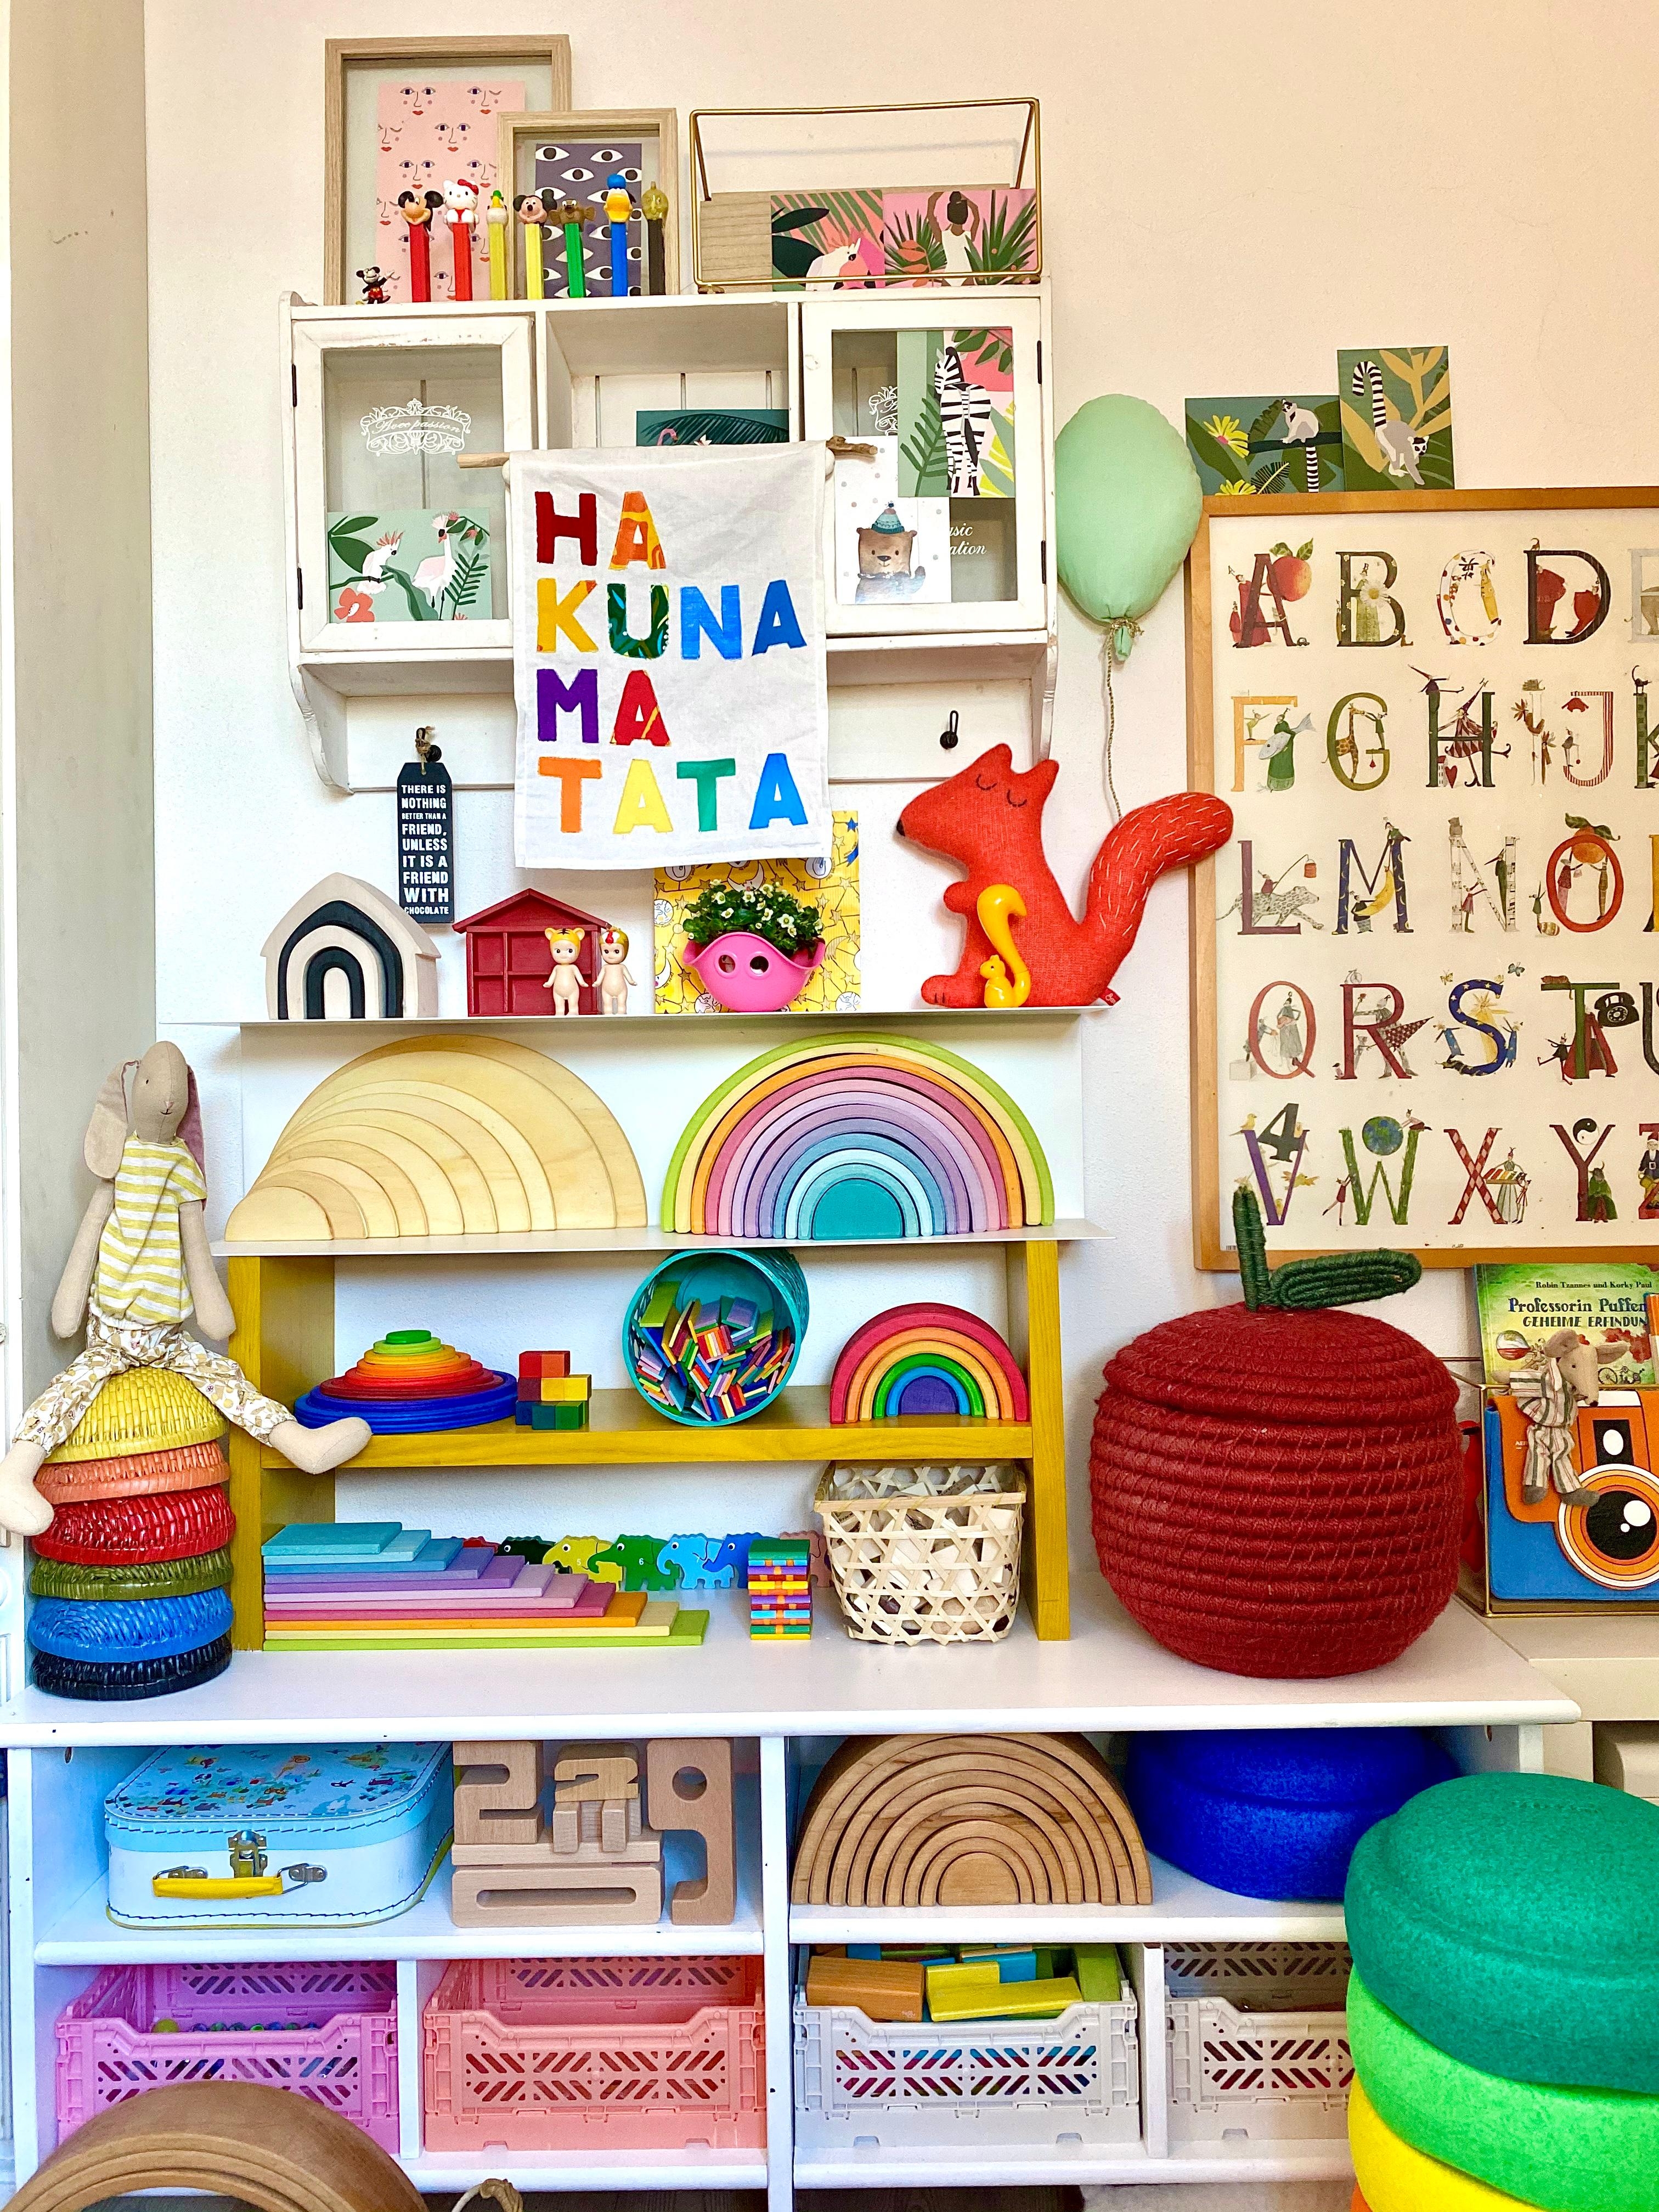 #kidsroomwall with #DIY #Banner #hakunamatata #colourful #rainbow #farbenfroh